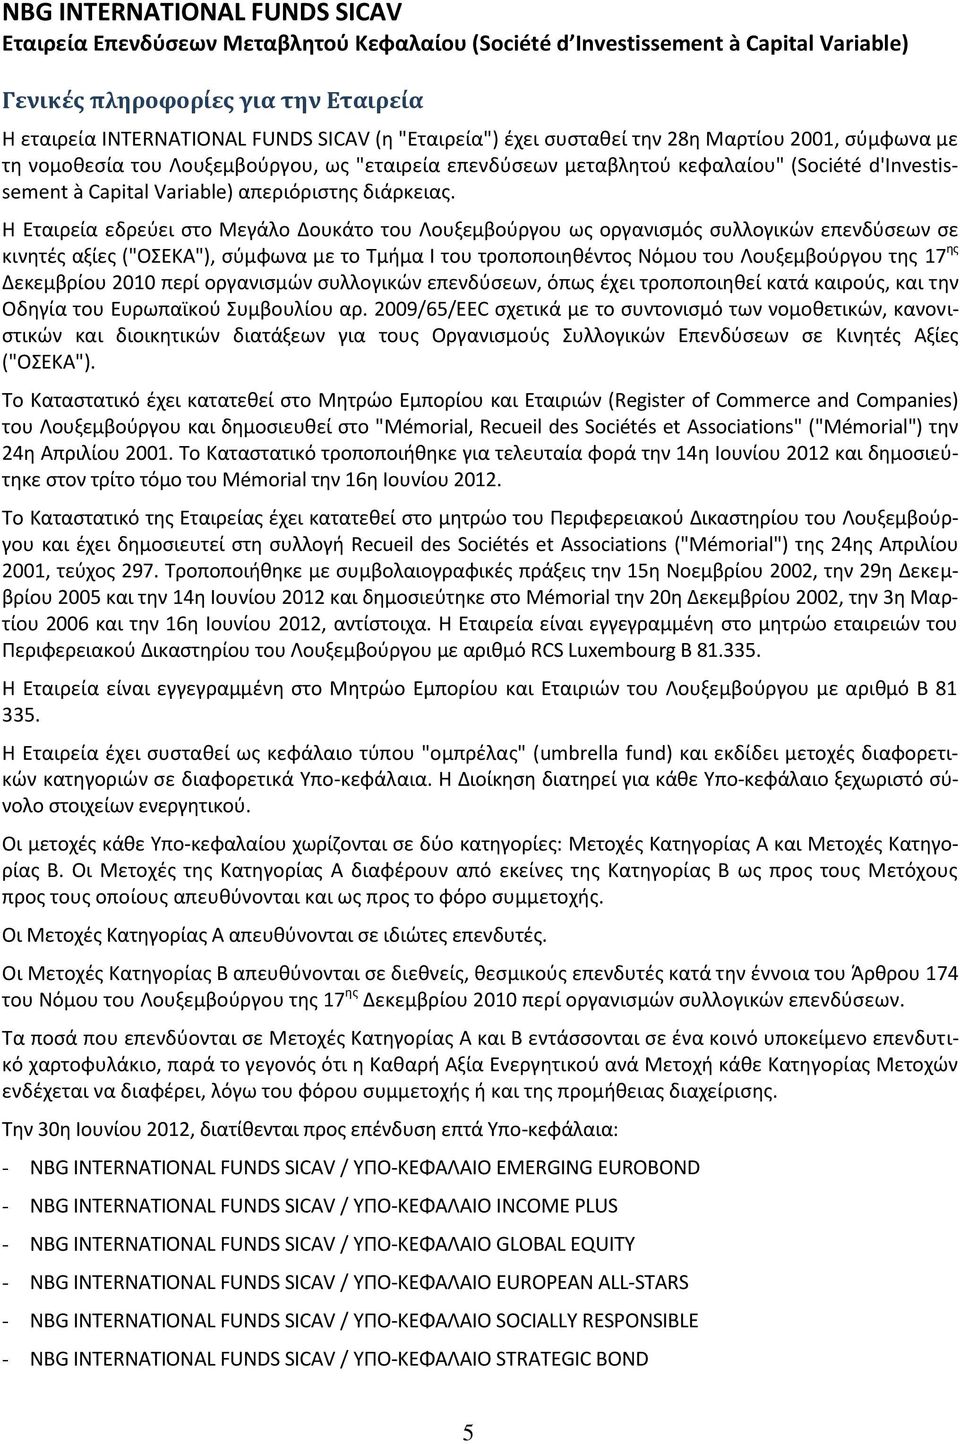 Η Εταιρεία εδρεφει ςτο Μεγάλο Δουκάτο του Λουξεμβοφργου ωσ οργανιςμόσ ςυλλογικϊν επενδφςεων ςε κινθτζσ αξίεσ ("ΟΣΕΚΑ"), ςφμφωνα με το Τμιμα I του τροποποιθκζντοσ Νόμου του Λουξεμβοφργου τθσ 17 θσ